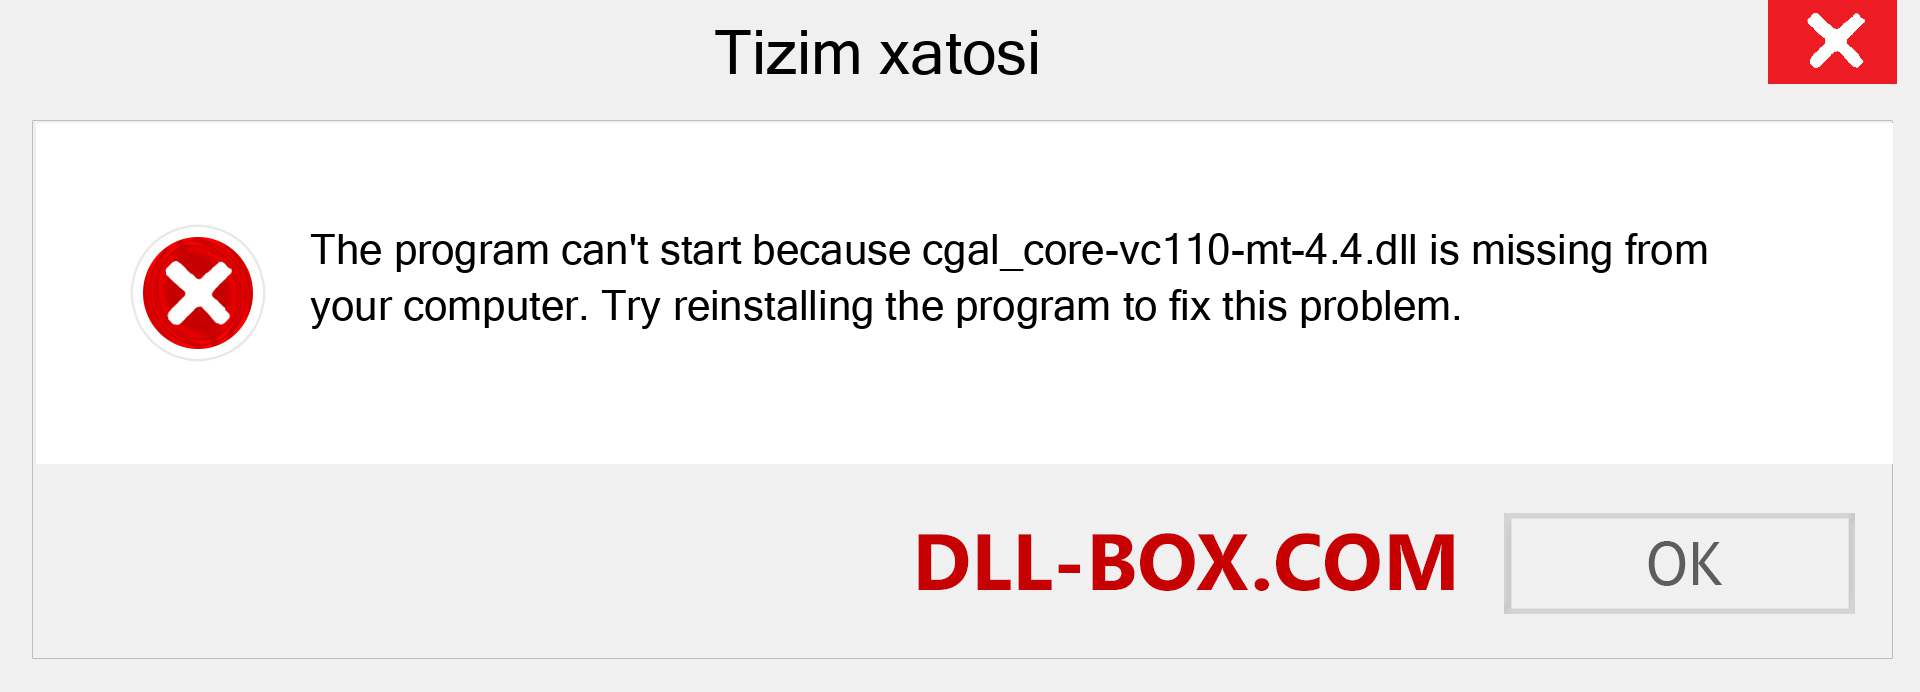 cgal_core-vc110-mt-4.4.dll fayli yo'qolganmi?. Windows 7, 8, 10 uchun yuklab olish - Windowsda cgal_core-vc110-mt-4.4 dll etishmayotgan xatoni tuzating, rasmlar, rasmlar